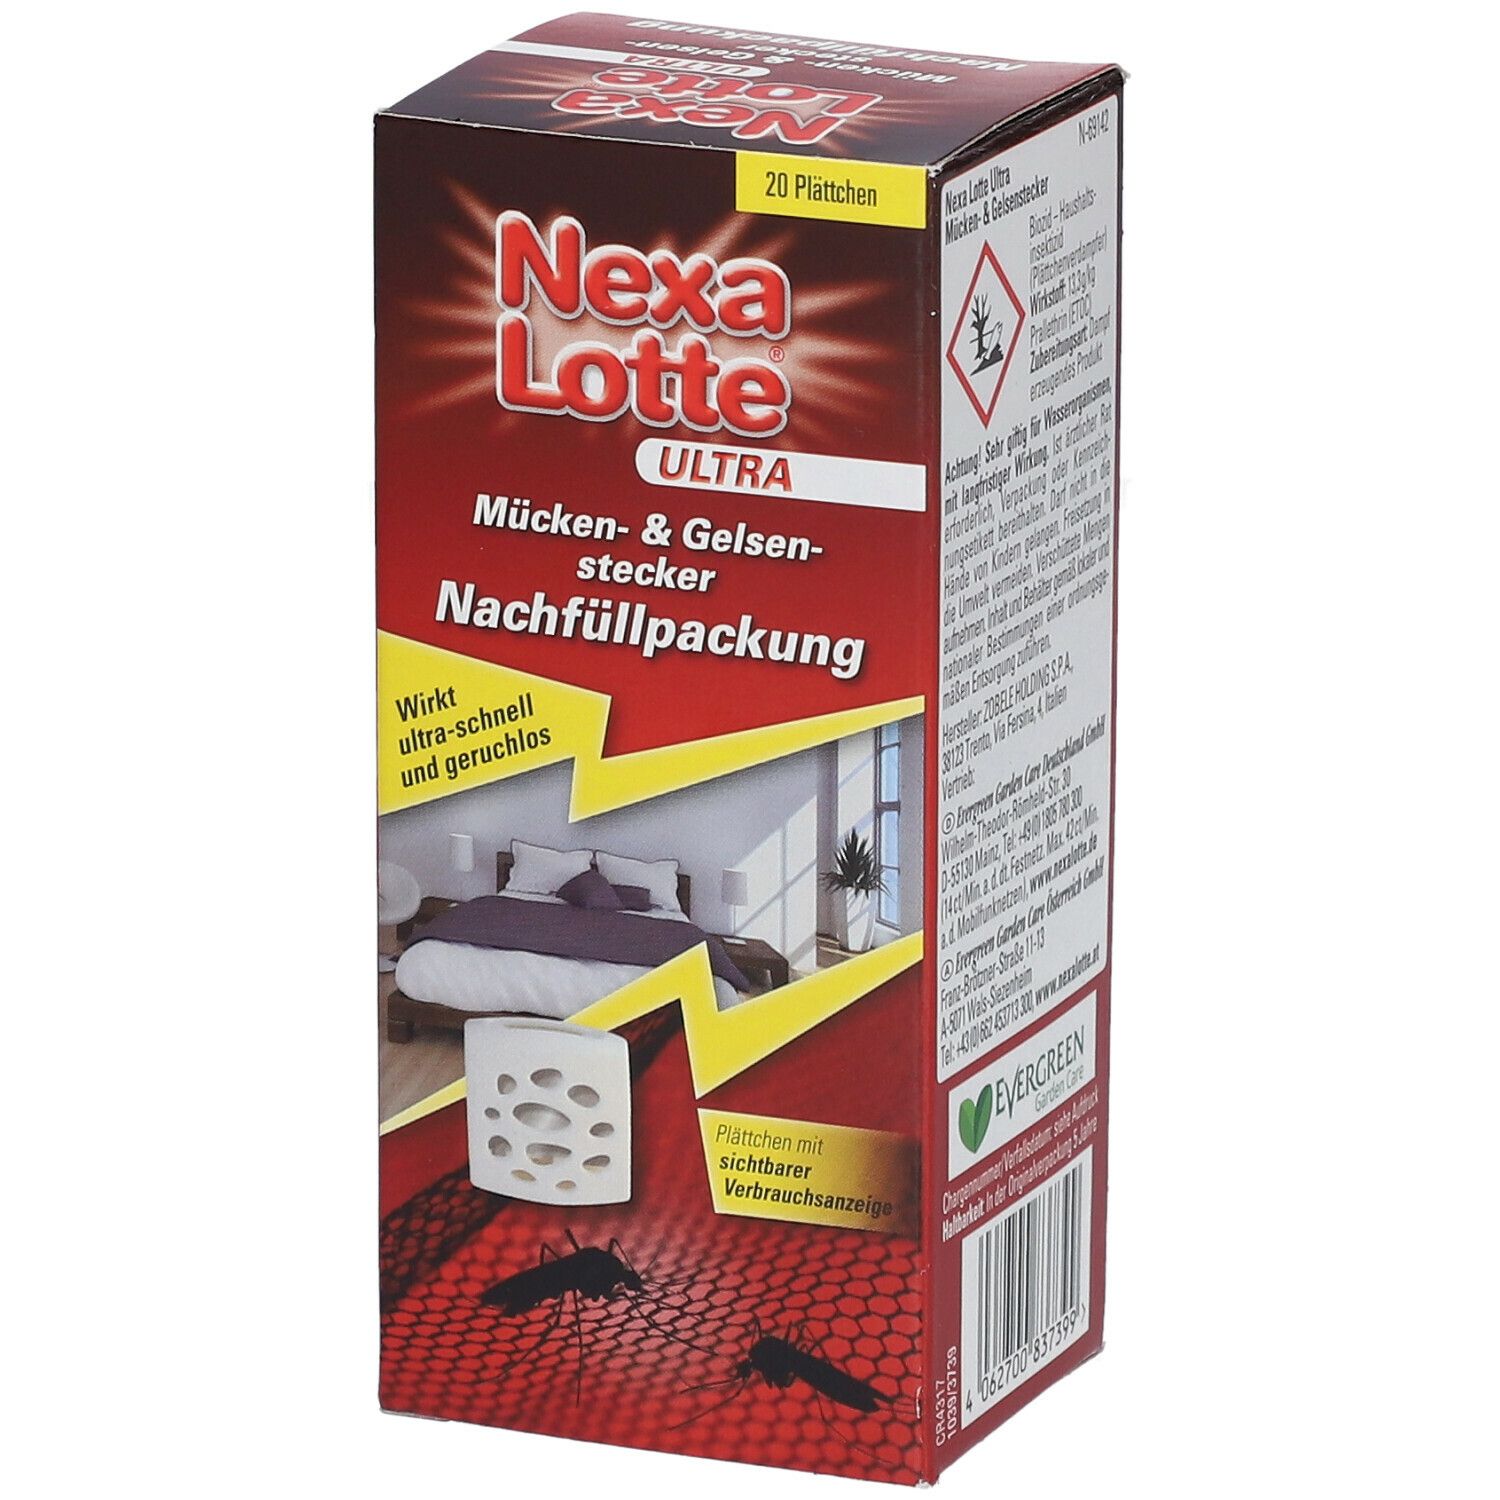 Nexa Lotte Mückenstecker Ultra NF